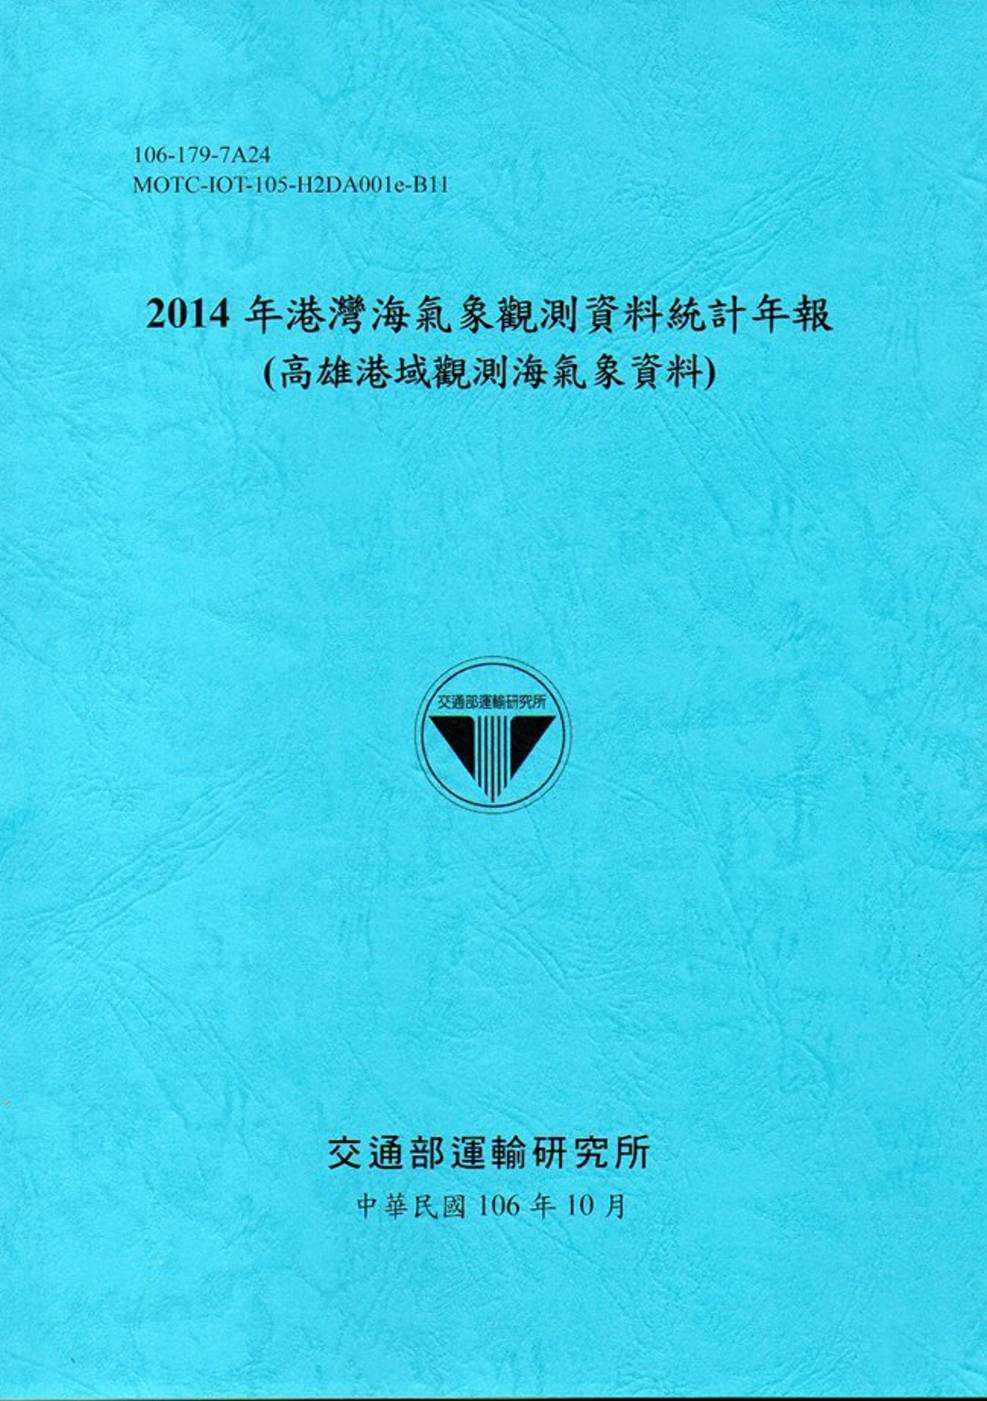 2014年港灣海氣象觀測資料統計年報(高雄港域觀測海氣象資料)106深藍